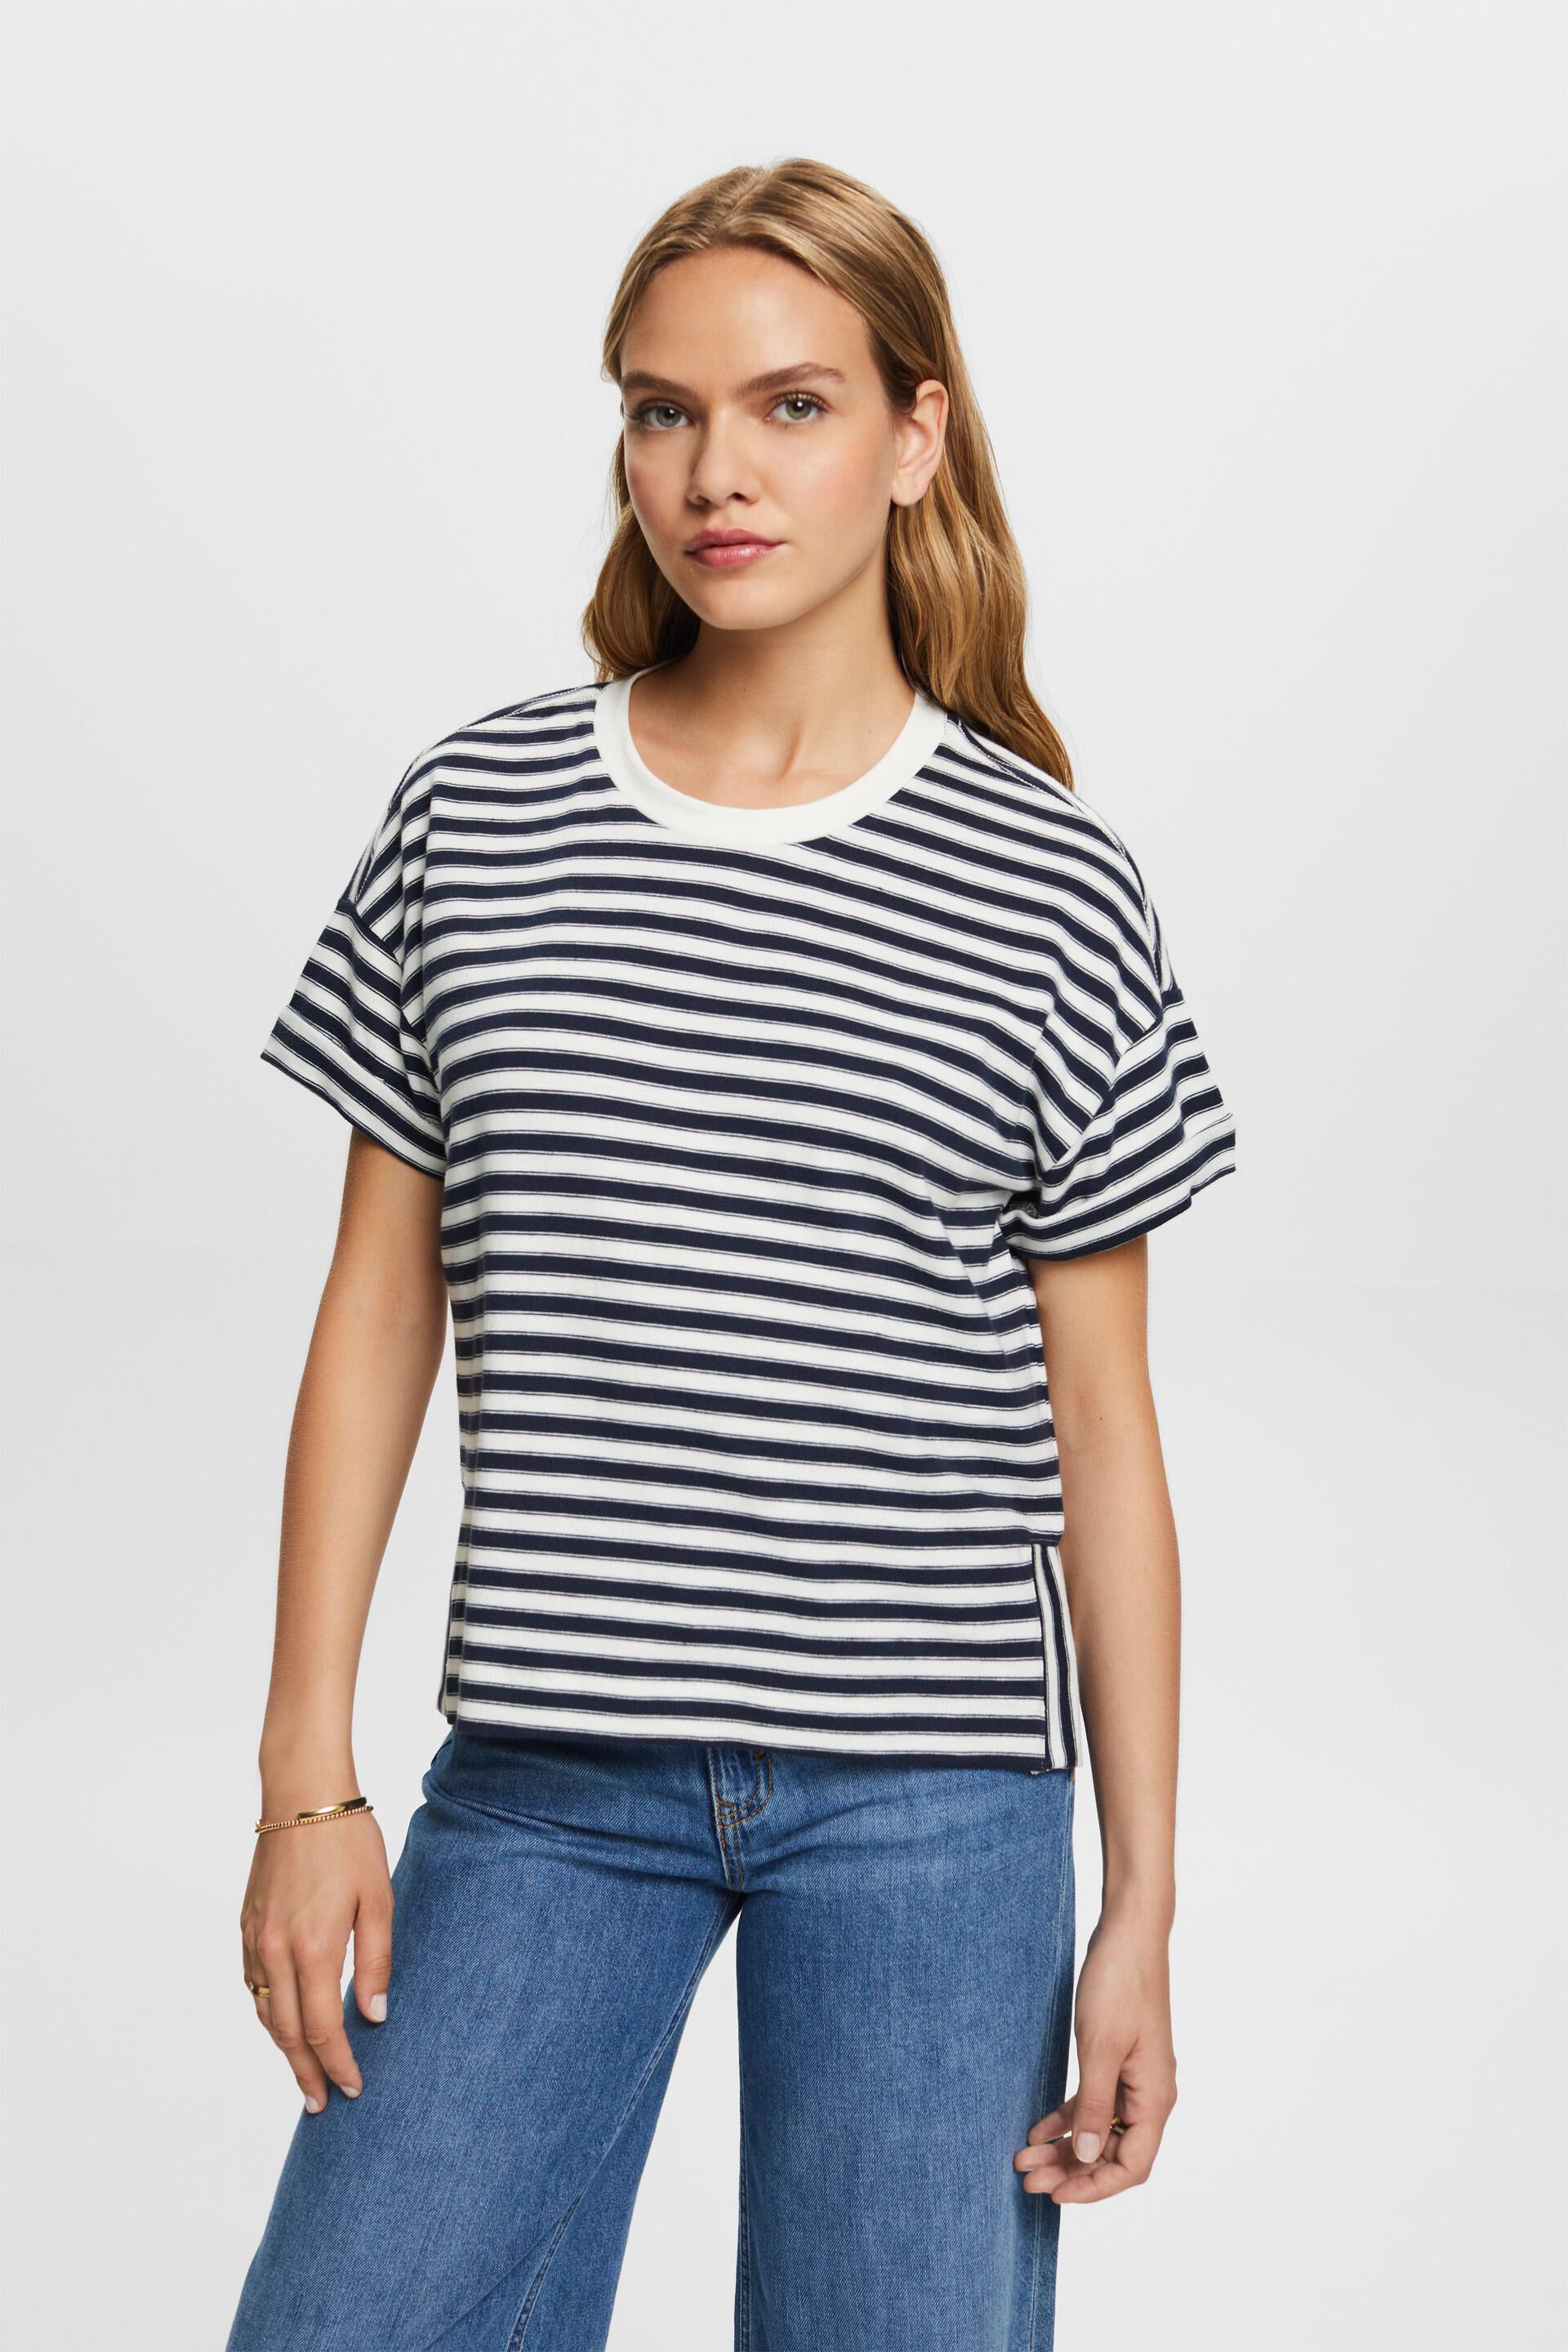 Esprit 100% cotton Striped t-shirt,